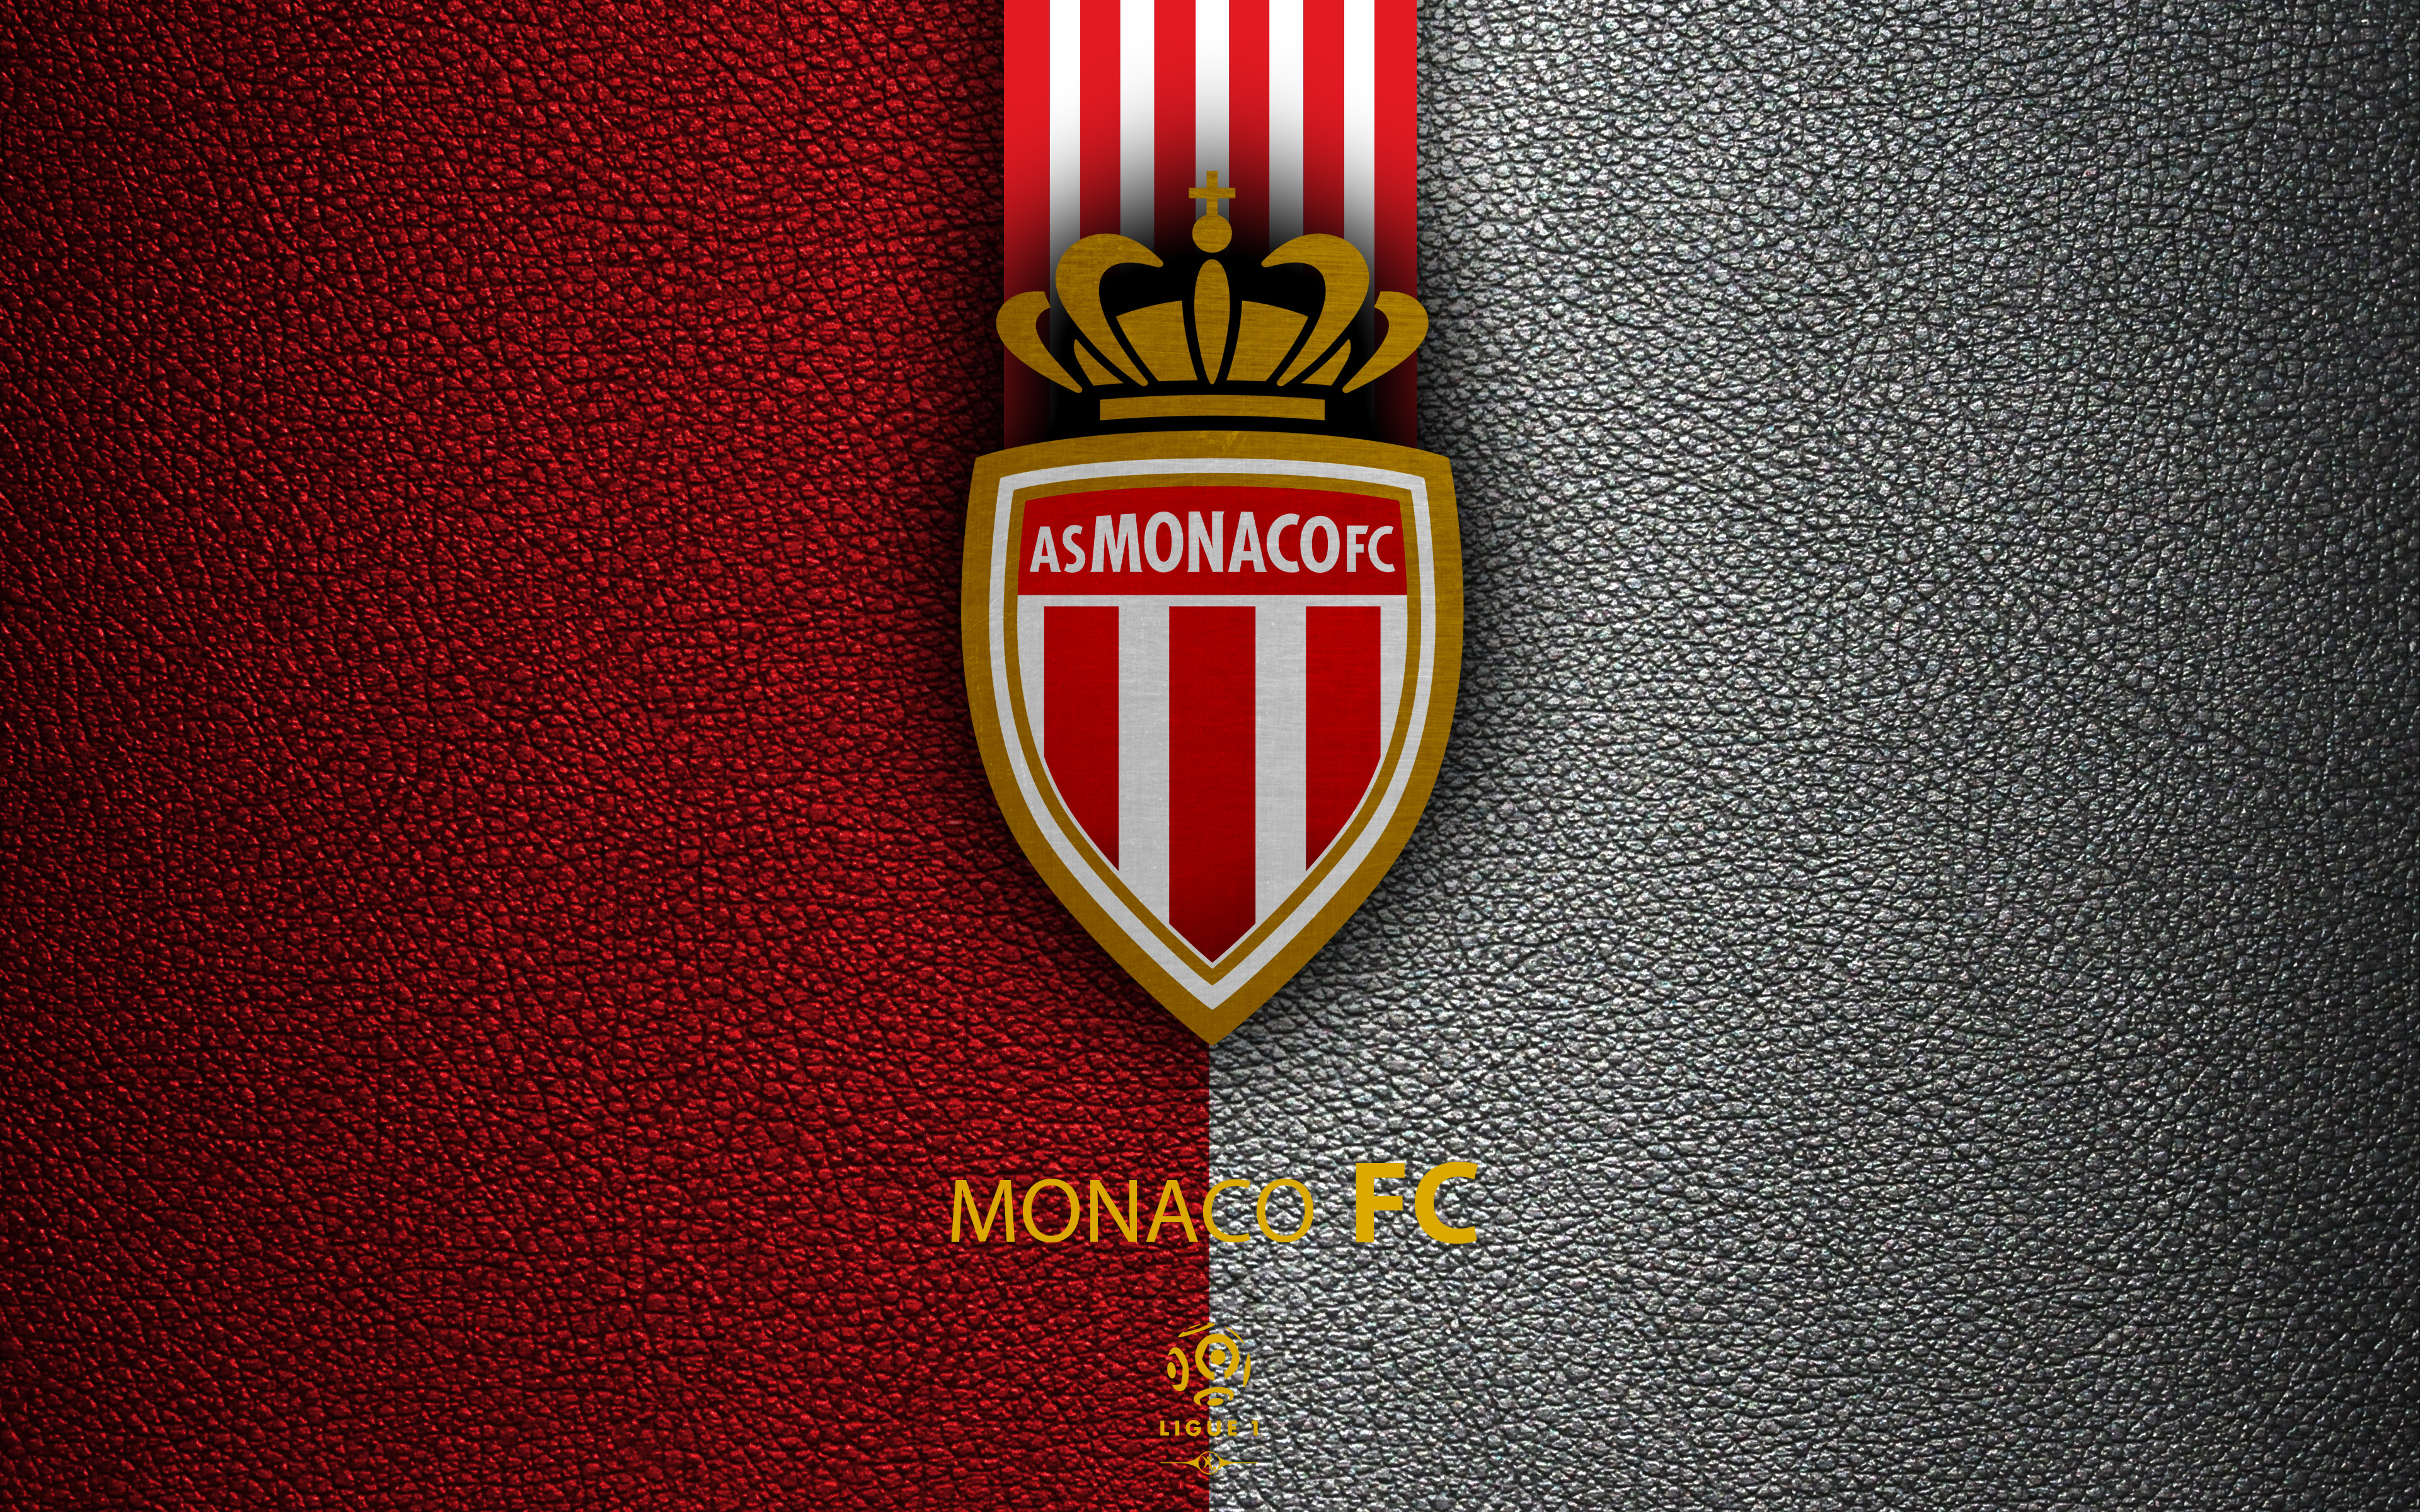 As Monaco Fc 4k Ultra Hd Wallpaper - Fond D Ecran As Monaco , HD Wallpaper & Backgrounds